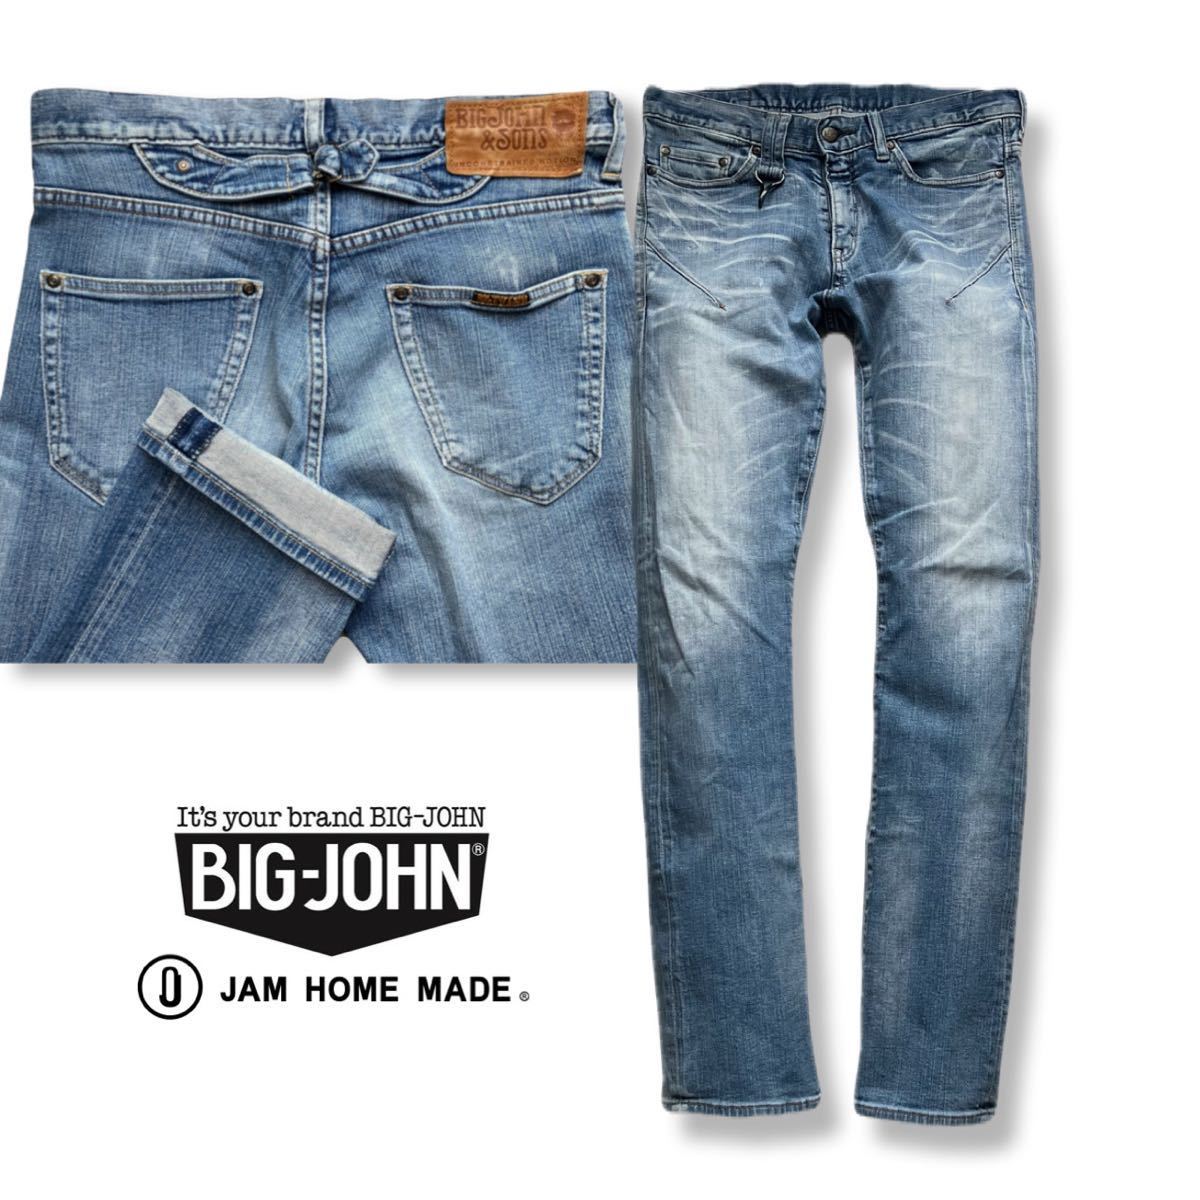  бесплатная доставка BIG JOHN & SONS JAM HOME MADE Big John солнечный s Jam Home Made сотрудничество Denim брюки распорка стрейч джинсы 30